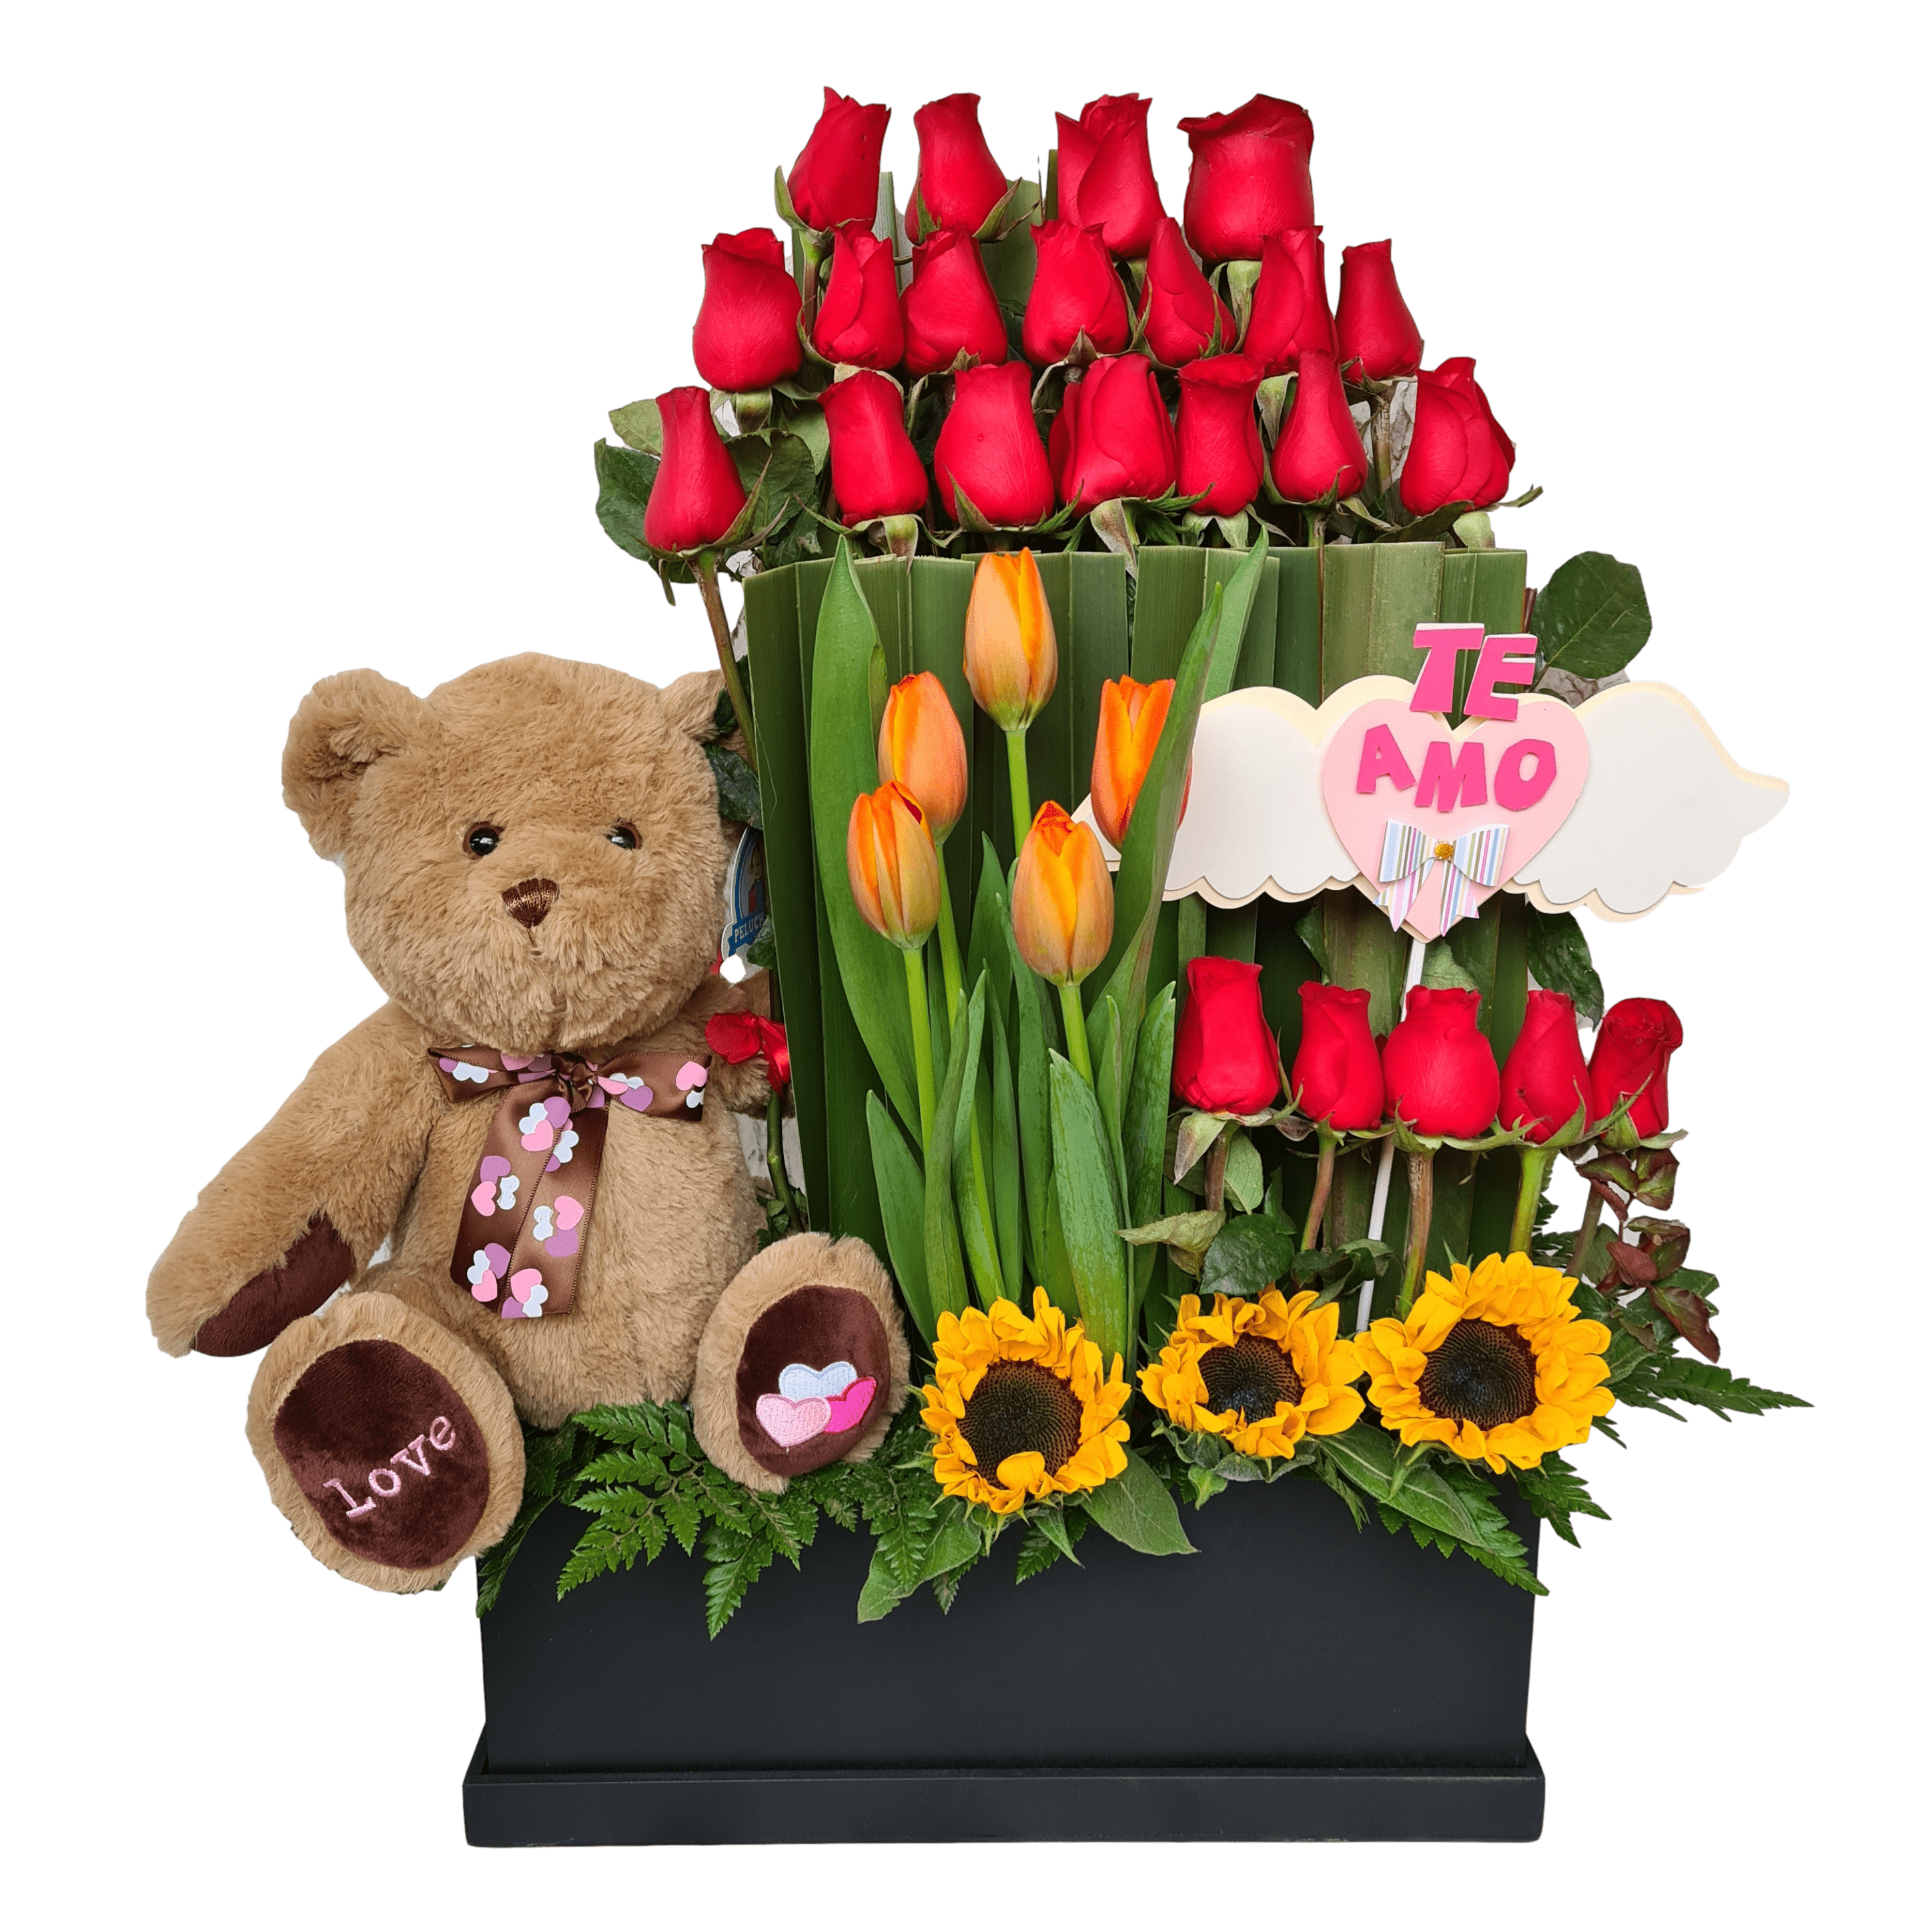 Details 100 picture arreglos con rosas y tulipanes